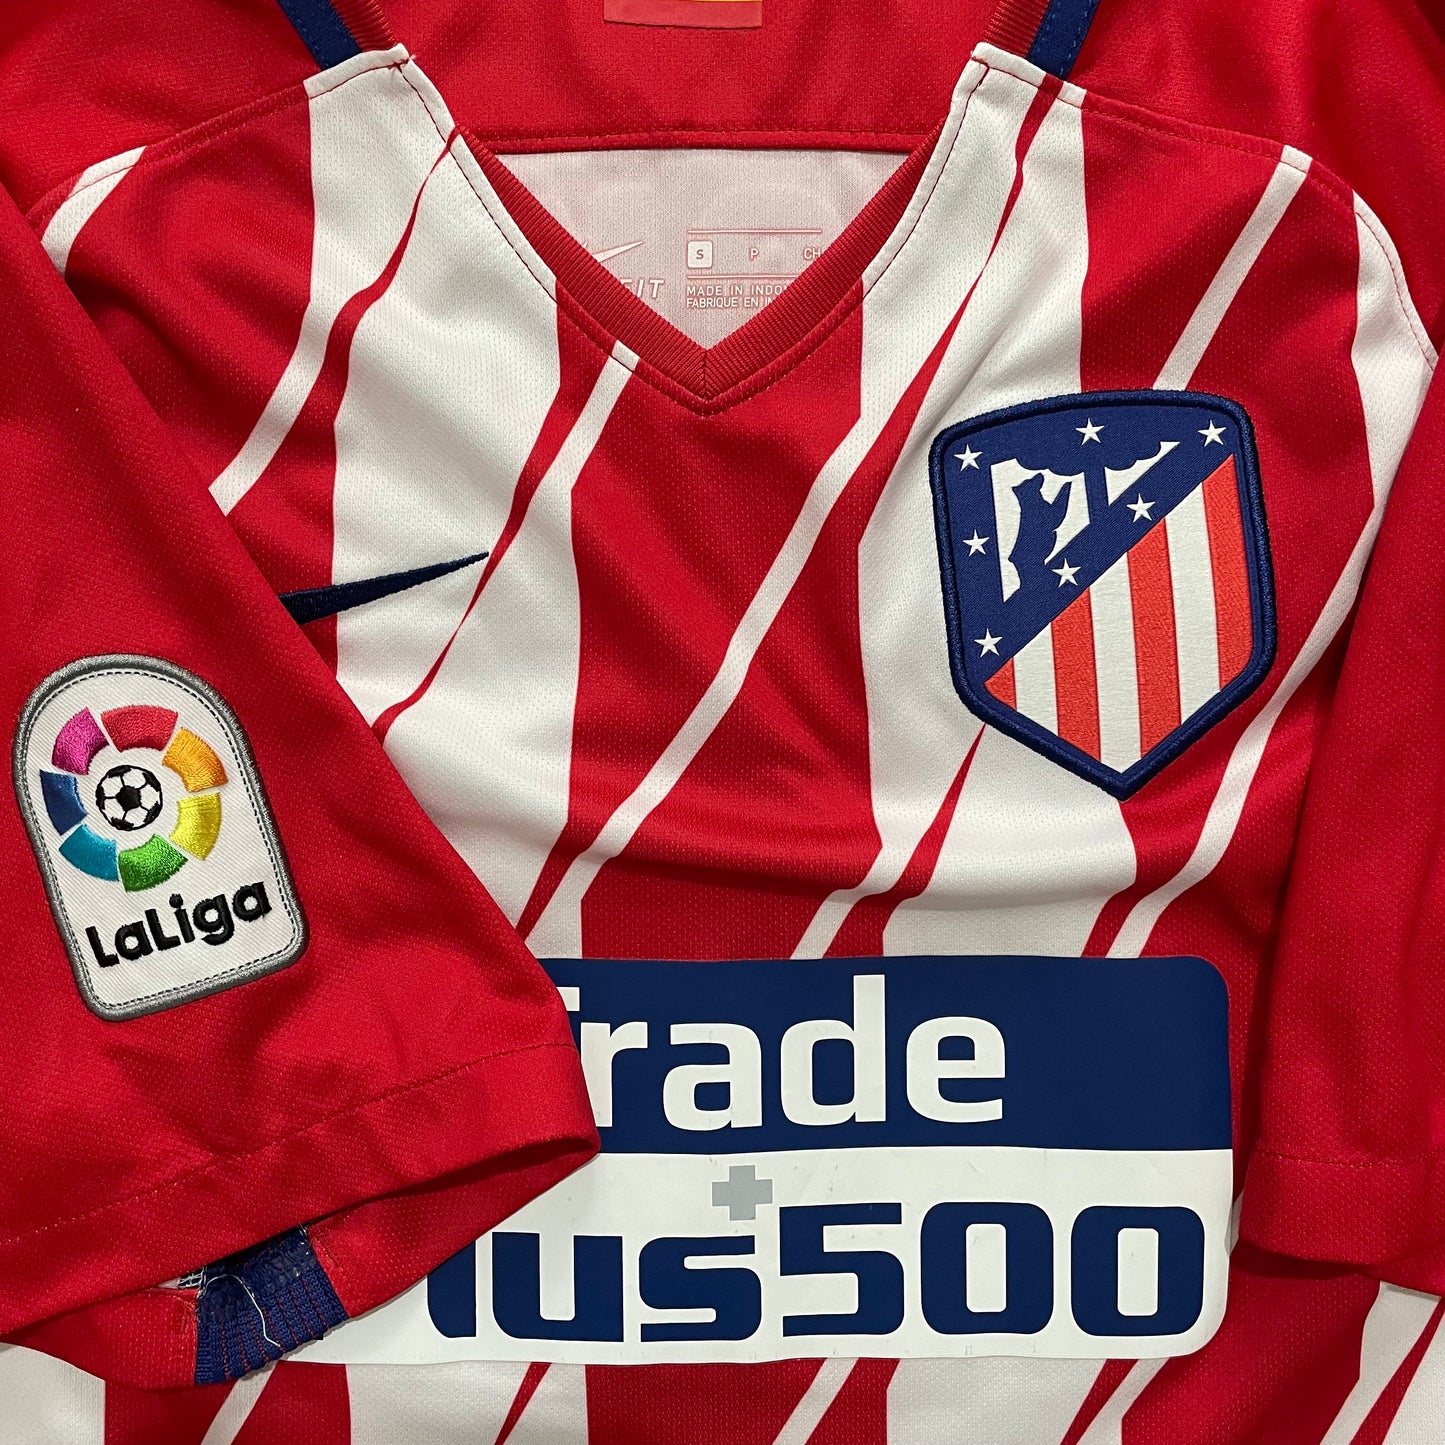 2017-2018 Atlético de Madrid home shirt #6 Koke (S)